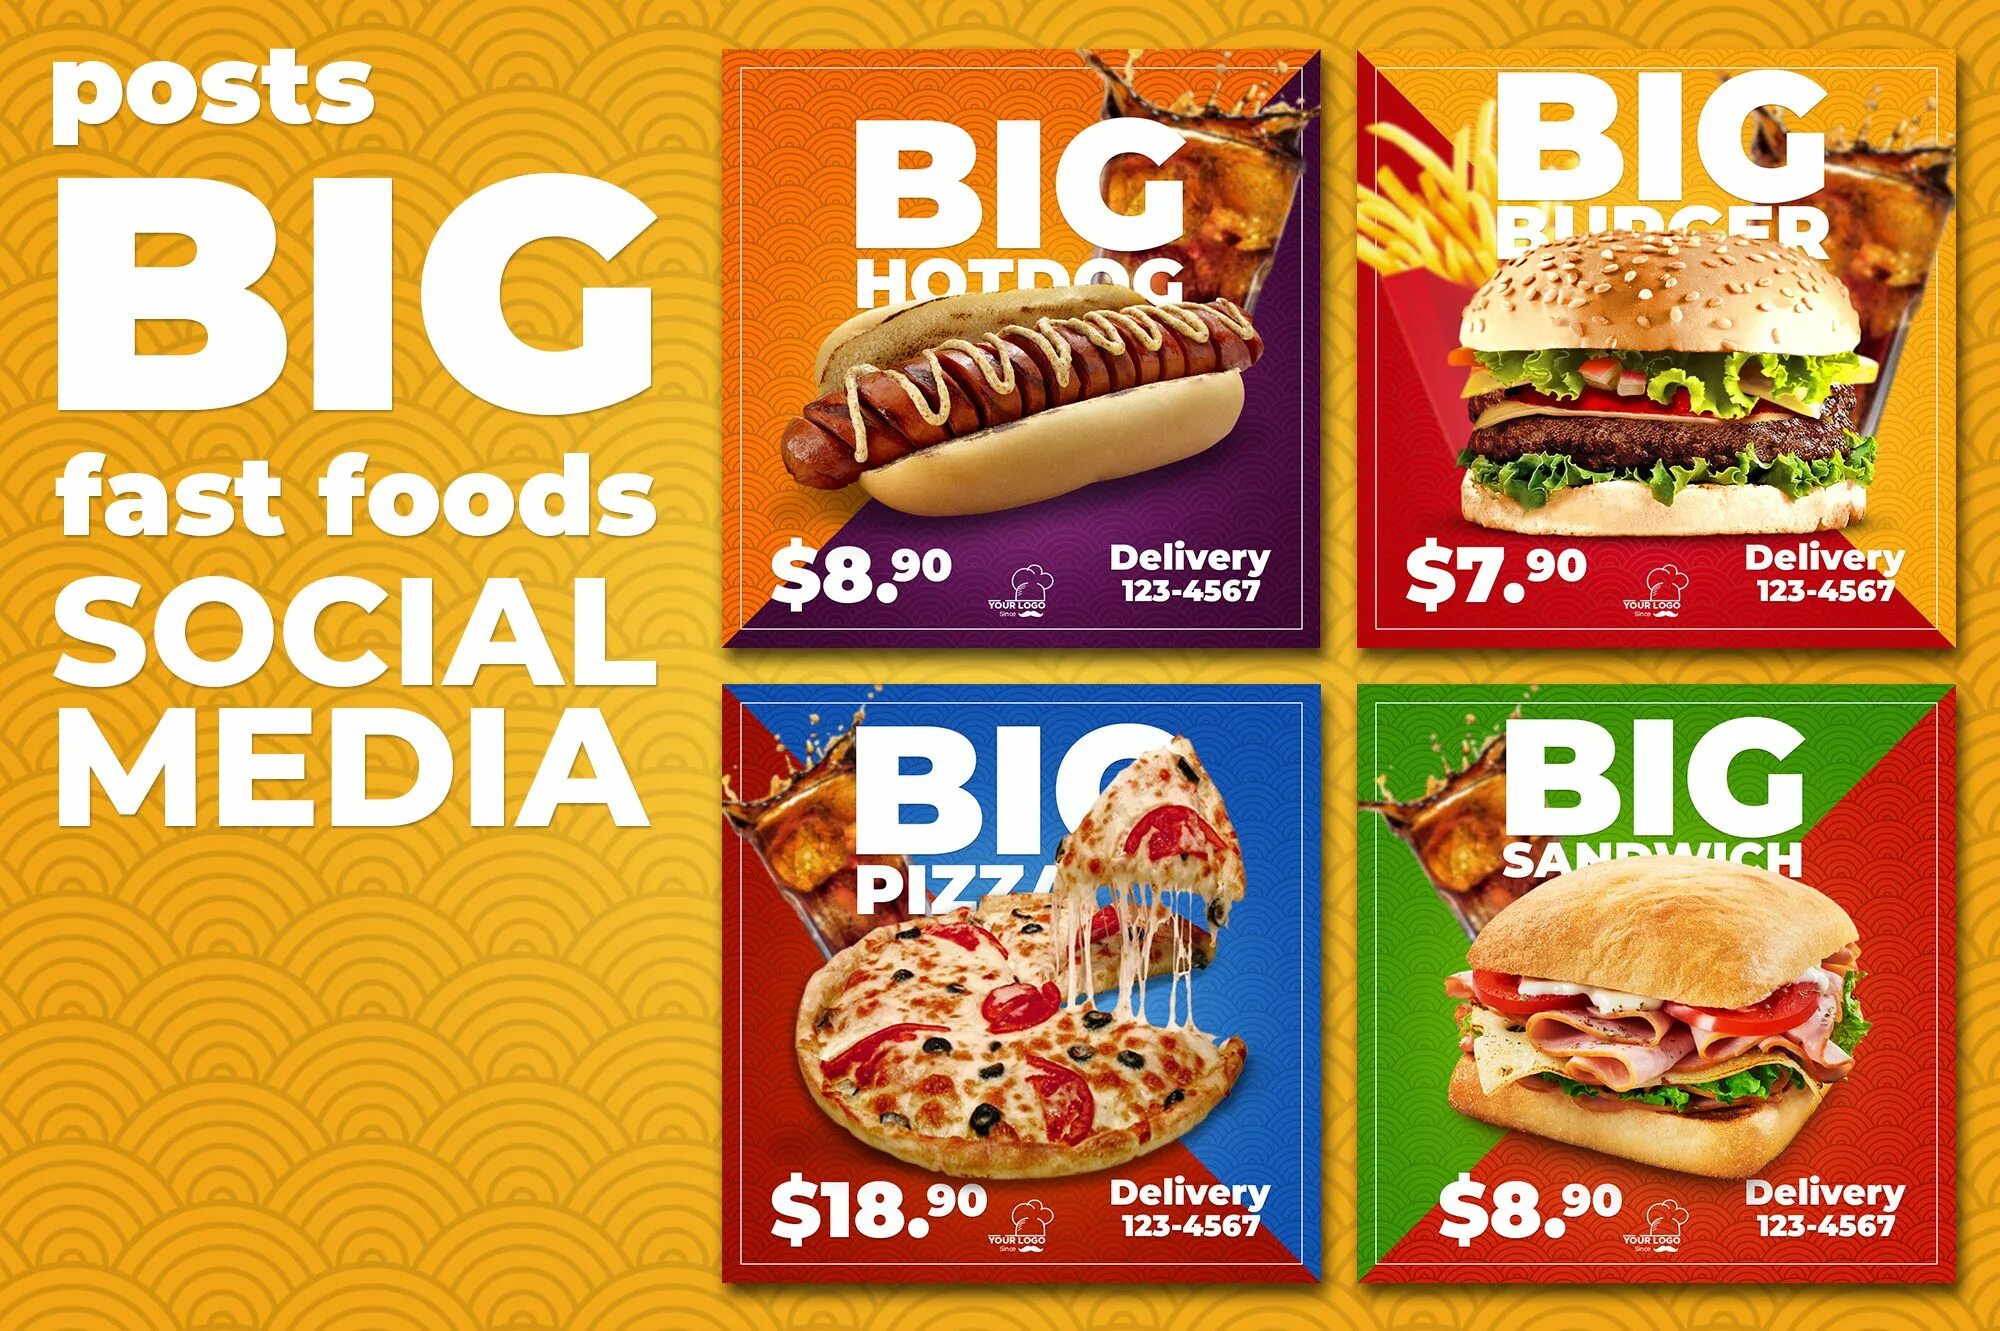 Media fast. Food social Media. Social Media Design food. Fast food social Media. Smm Post fast food.